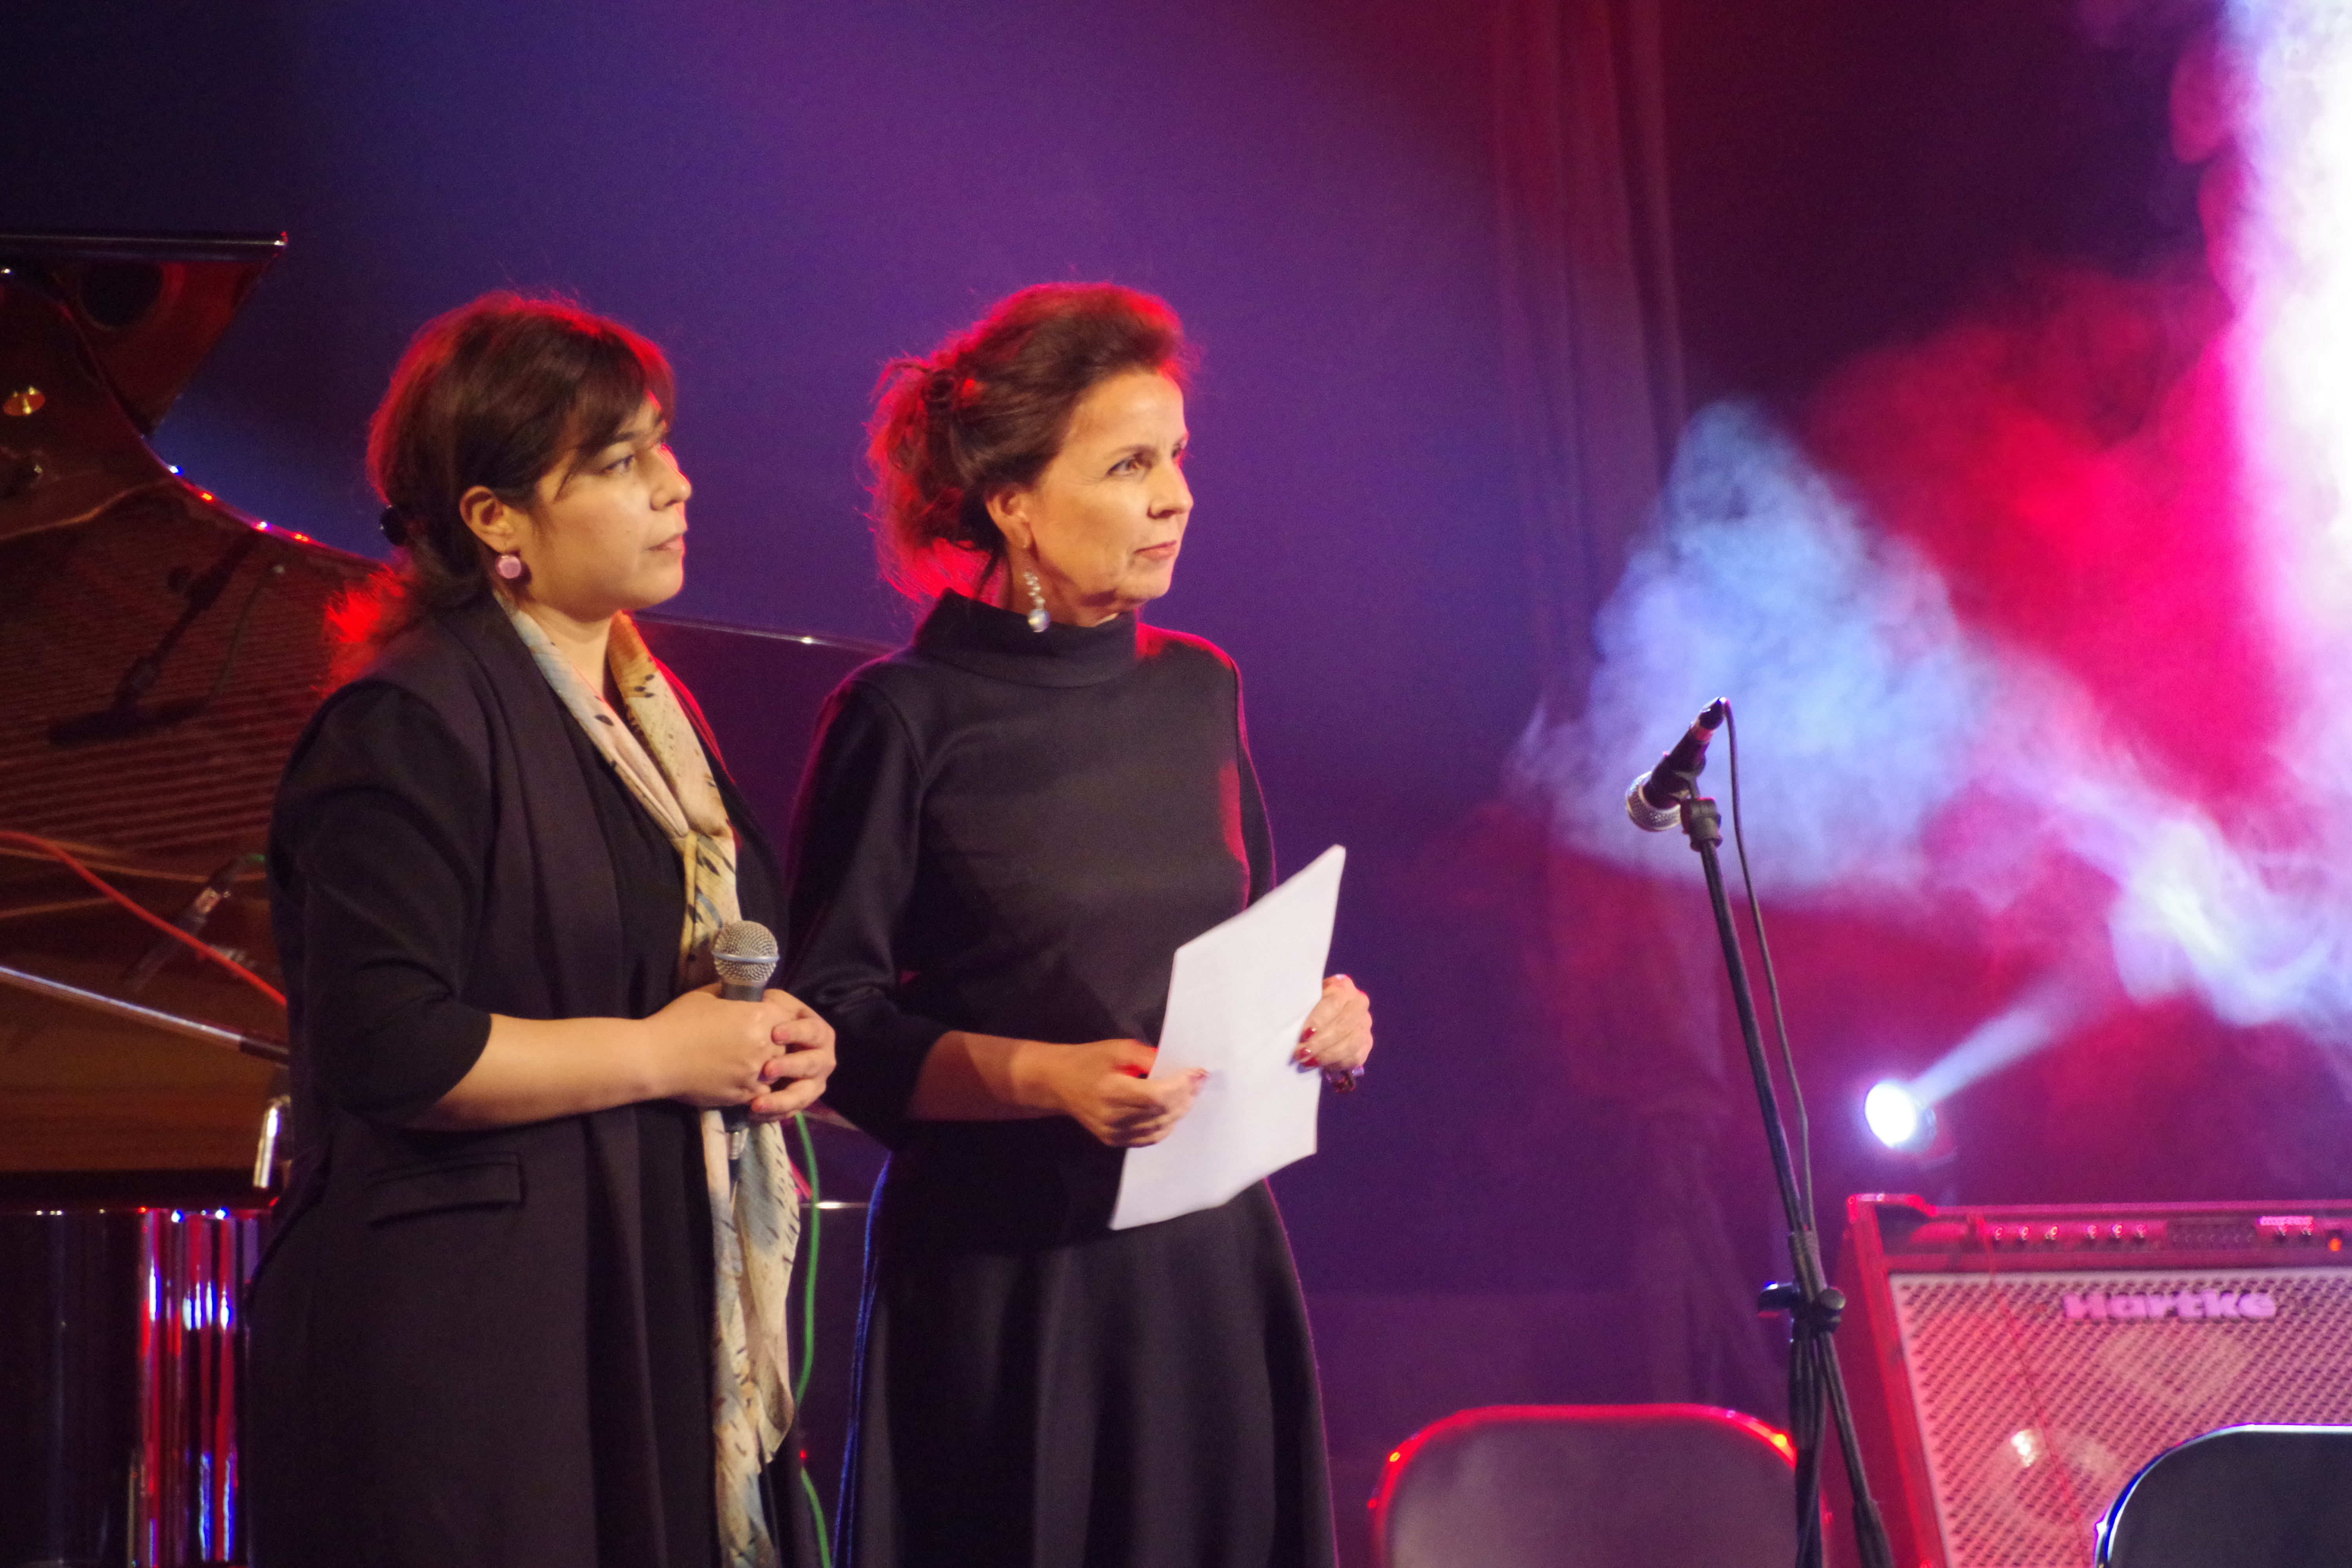 Walburga Roos, directrice de SCO Tajikistan et Muattara Bashirova, directrice de l'art et de la culture du SCO Tadjikistan ouvrant le festival.